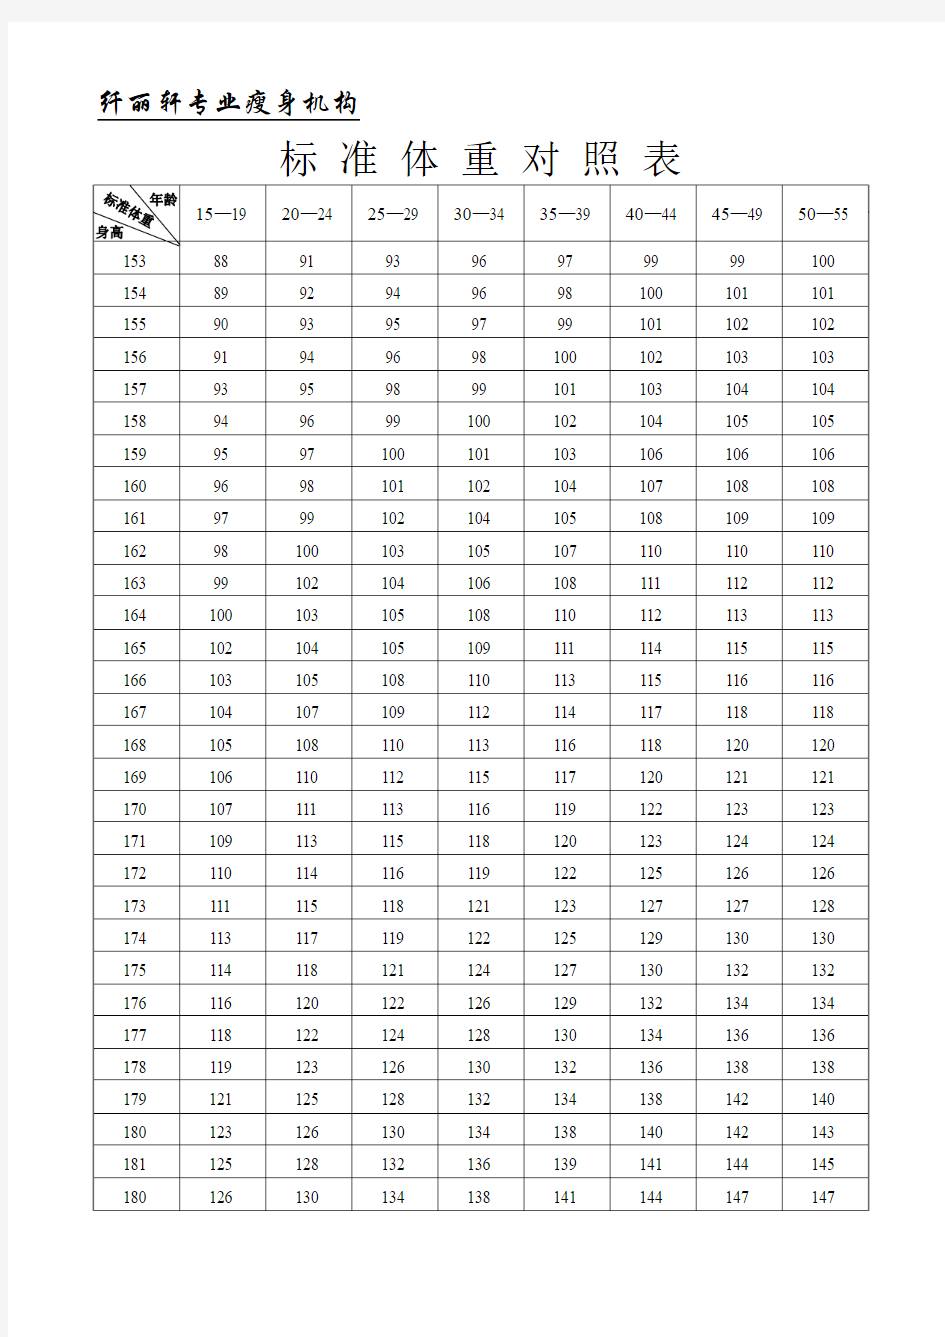 标准体重对照表和常见食品热量表